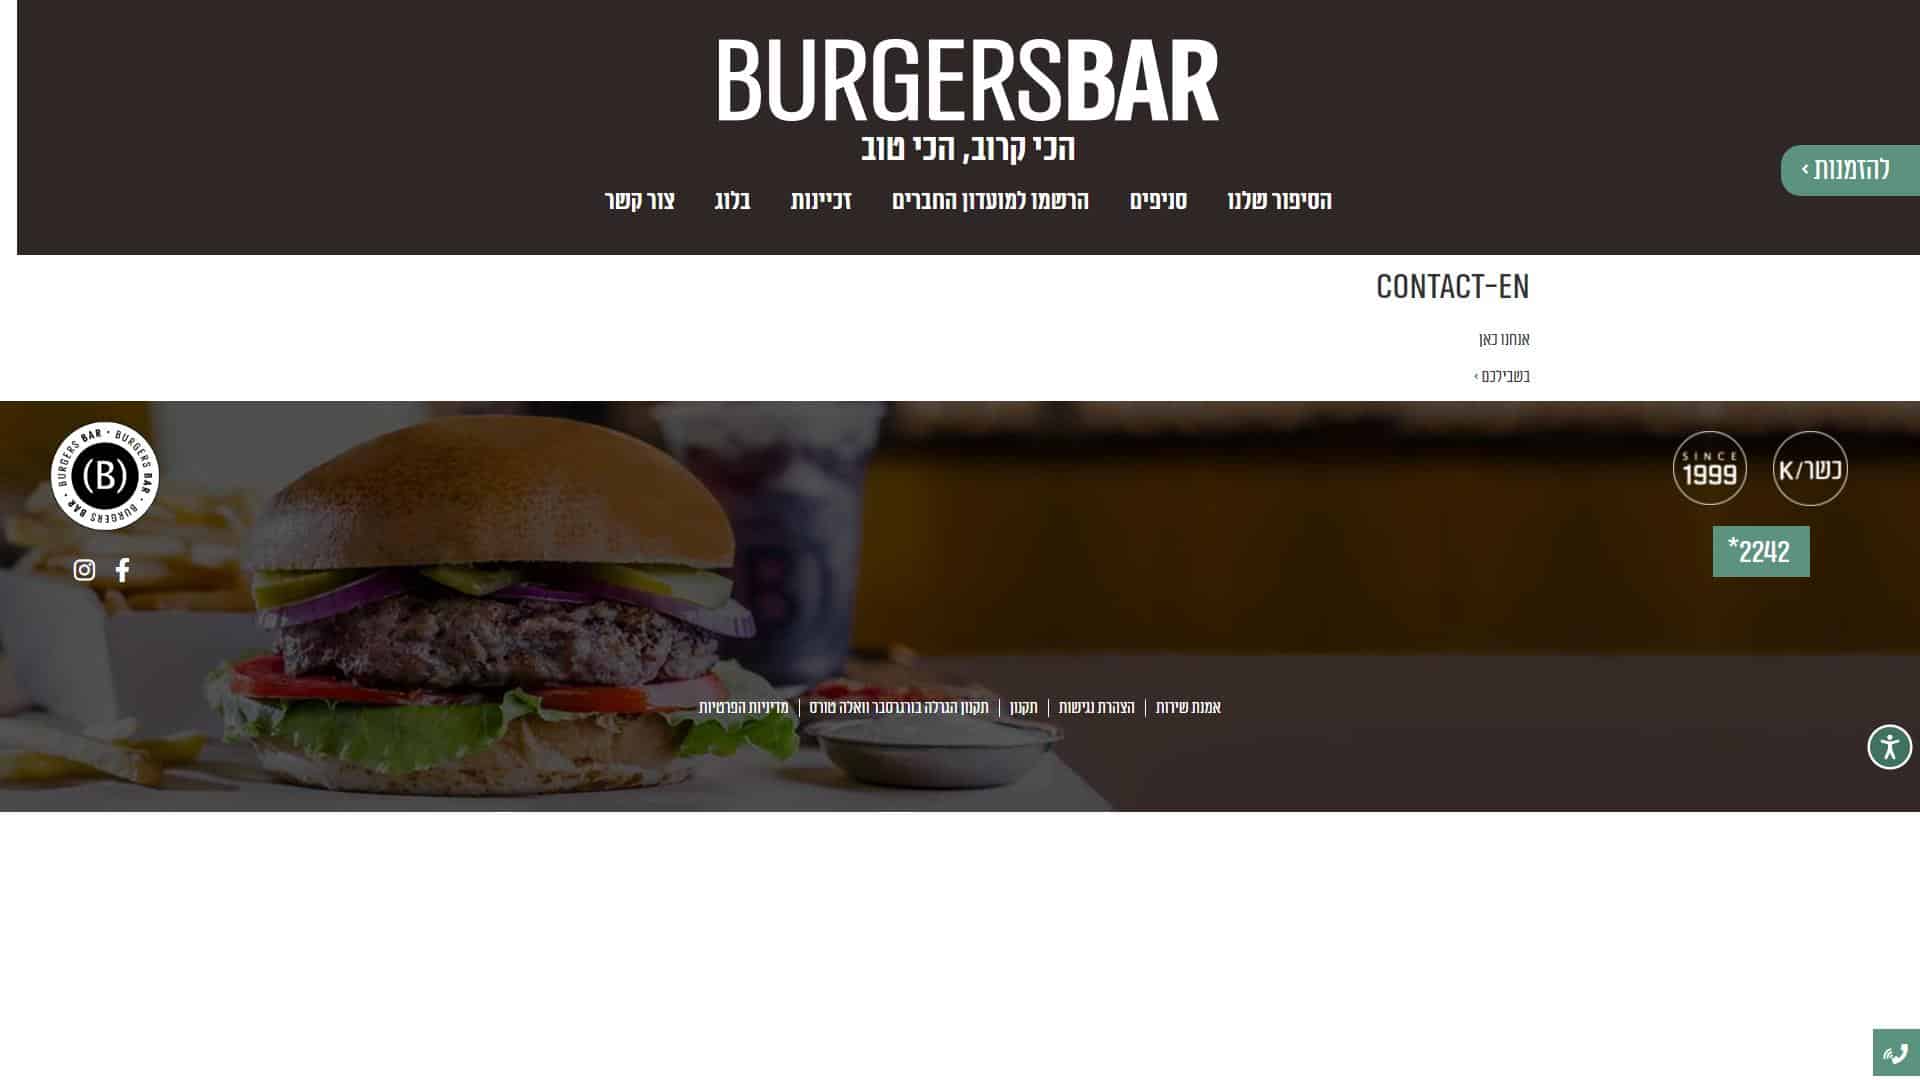 בורגרס בר Burgersbar טופס יצירת קשר צילום מסך